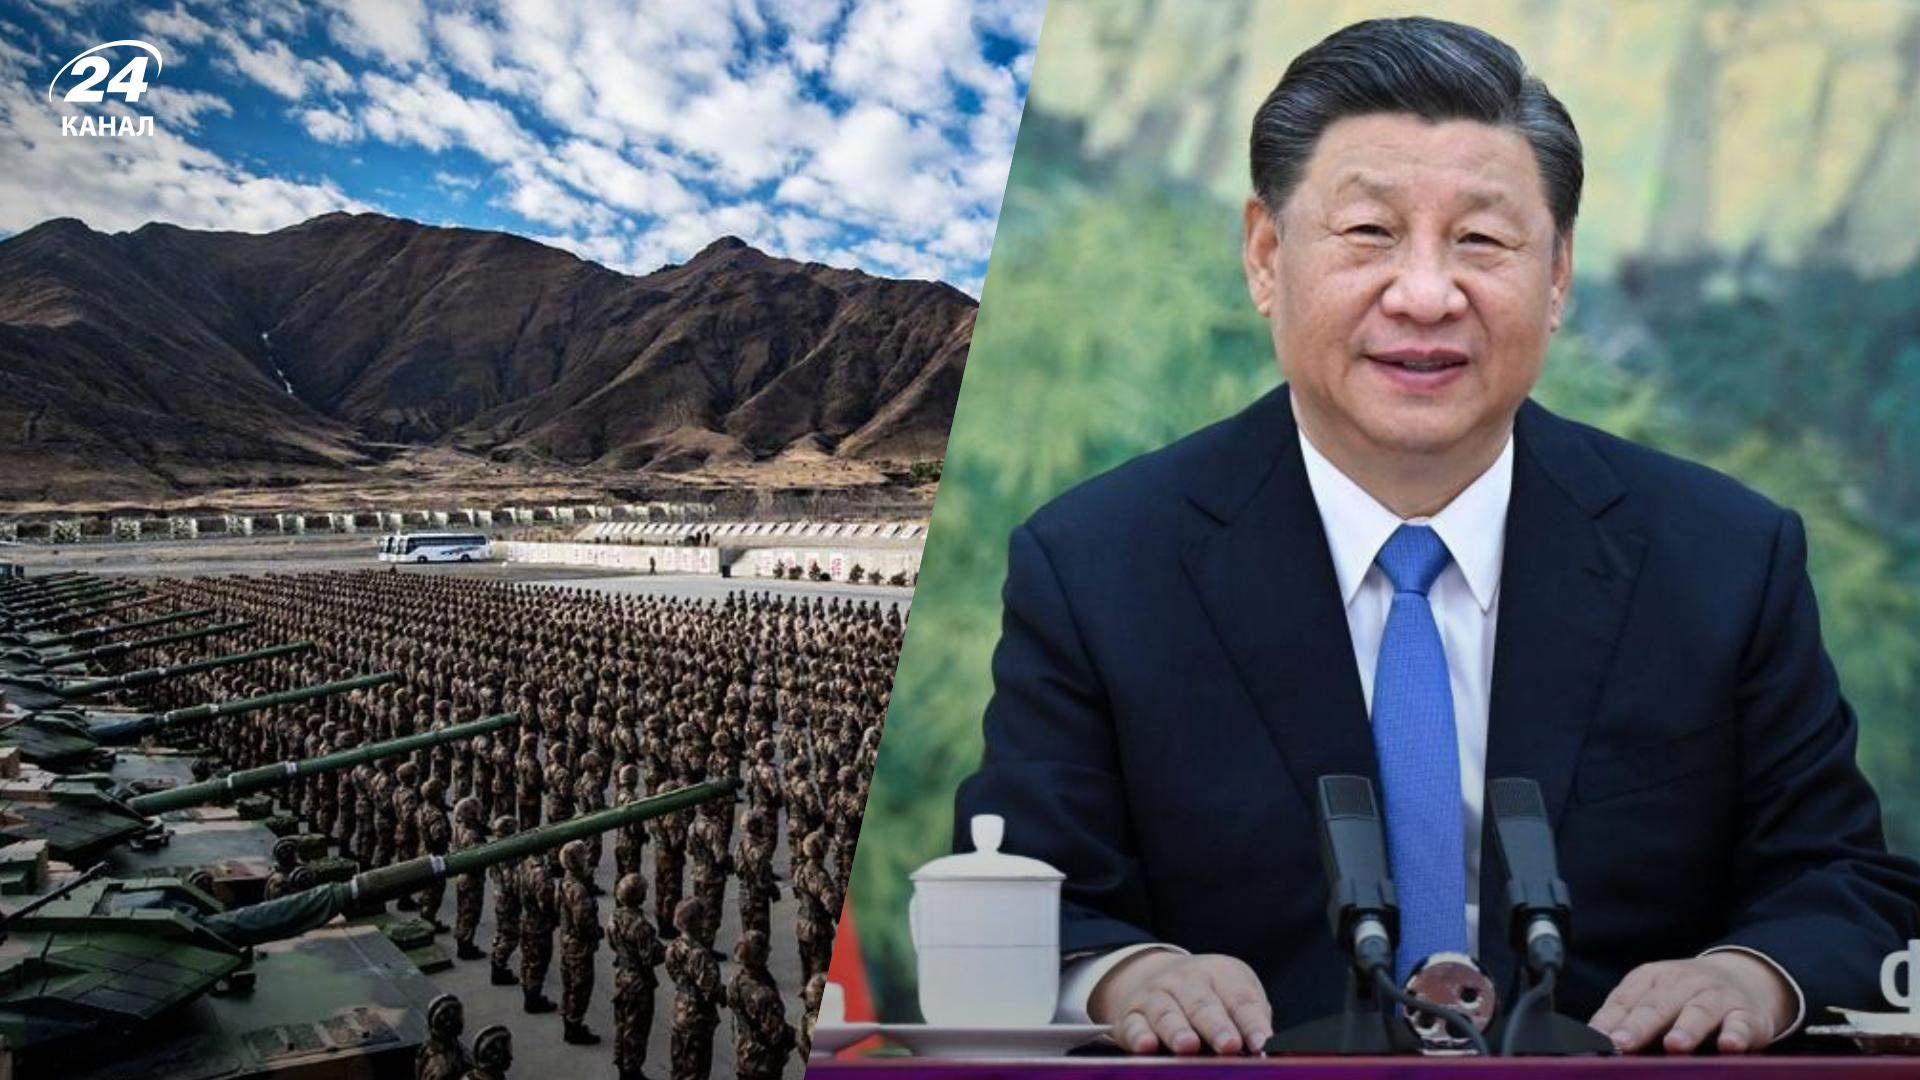 Китай может готовиться к "спецоперации" против Тайваня: Си Цзиньпин подписал указ